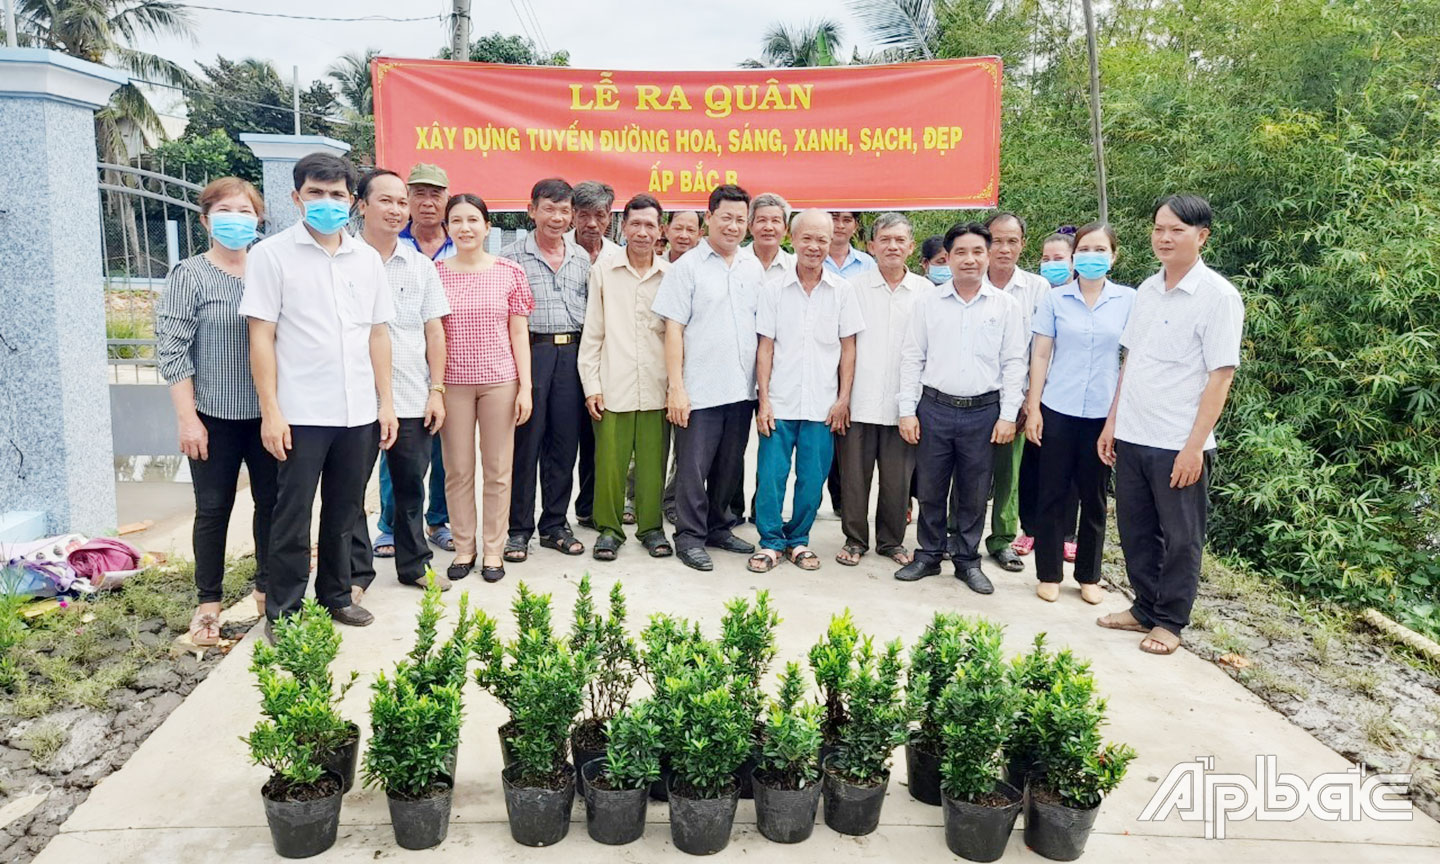 Ủy ban MTTQ xã Điềm Hy, huyện Châu Thành phối hợp ra quân trồng tuyến đường hoa.